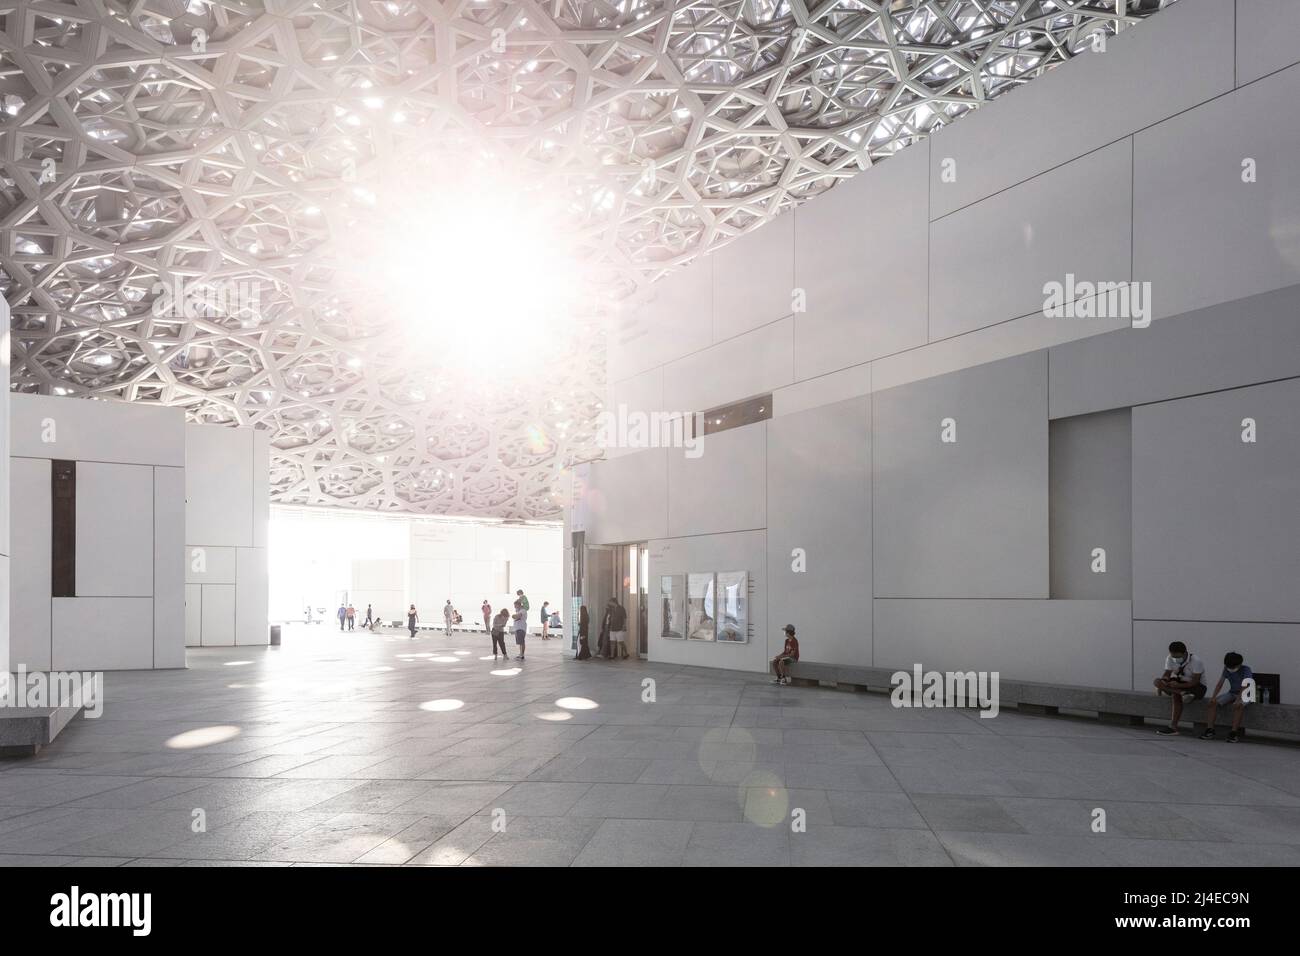 ÎLE DE SAADIYAT, ABU DHABI, ÉMIRATS ARABES UNIS - 16 octobre 2021 : le Louvre Abu Dhabi conçu par l'architecte Jean nouvel sur l'île de Saadiyat. Banque D'Images